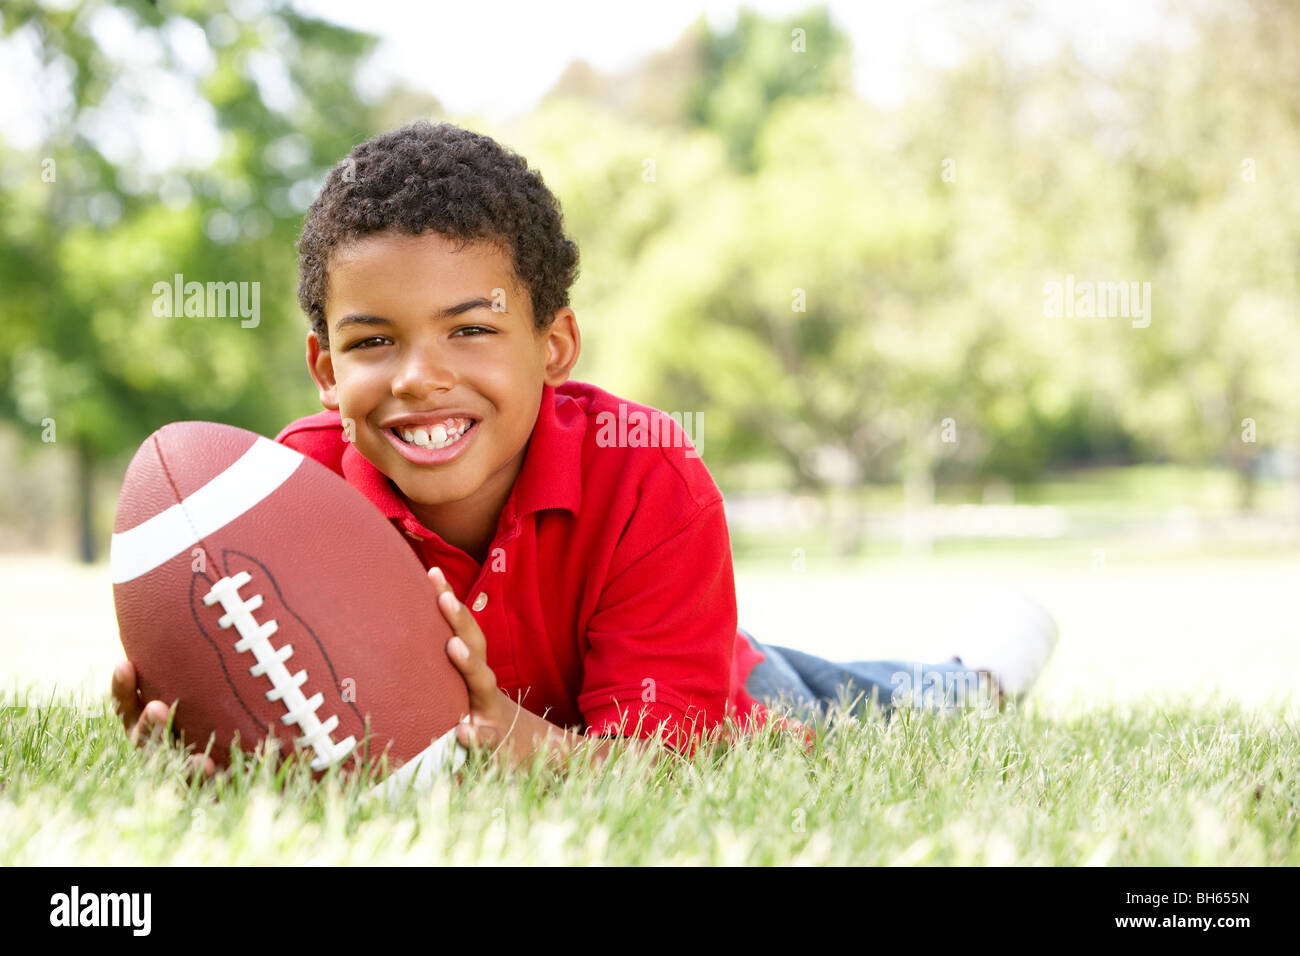 Chico en el parque con el fútbol americano Foto de stock